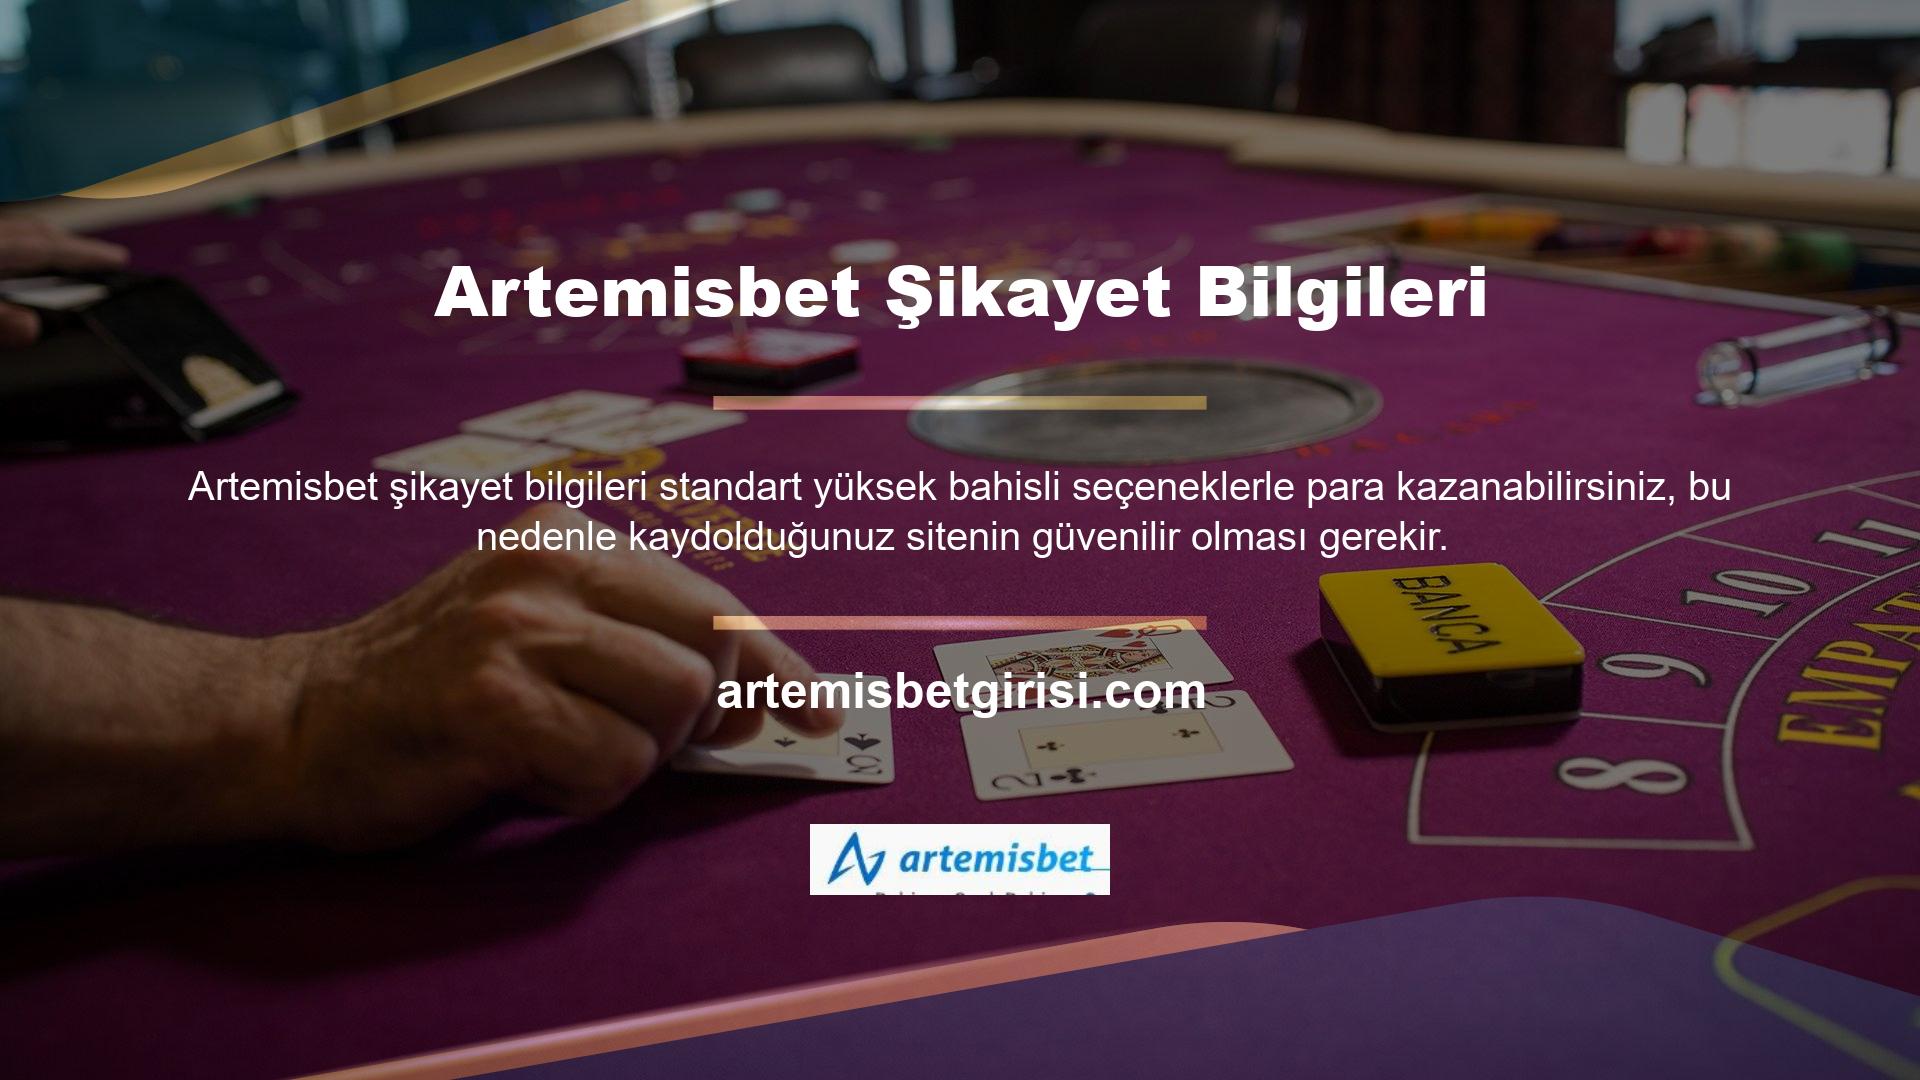 En iyi adres sınıfı Artemisbet şikayet bilgilerini ve güvenilirliğini kontrol altında tutar